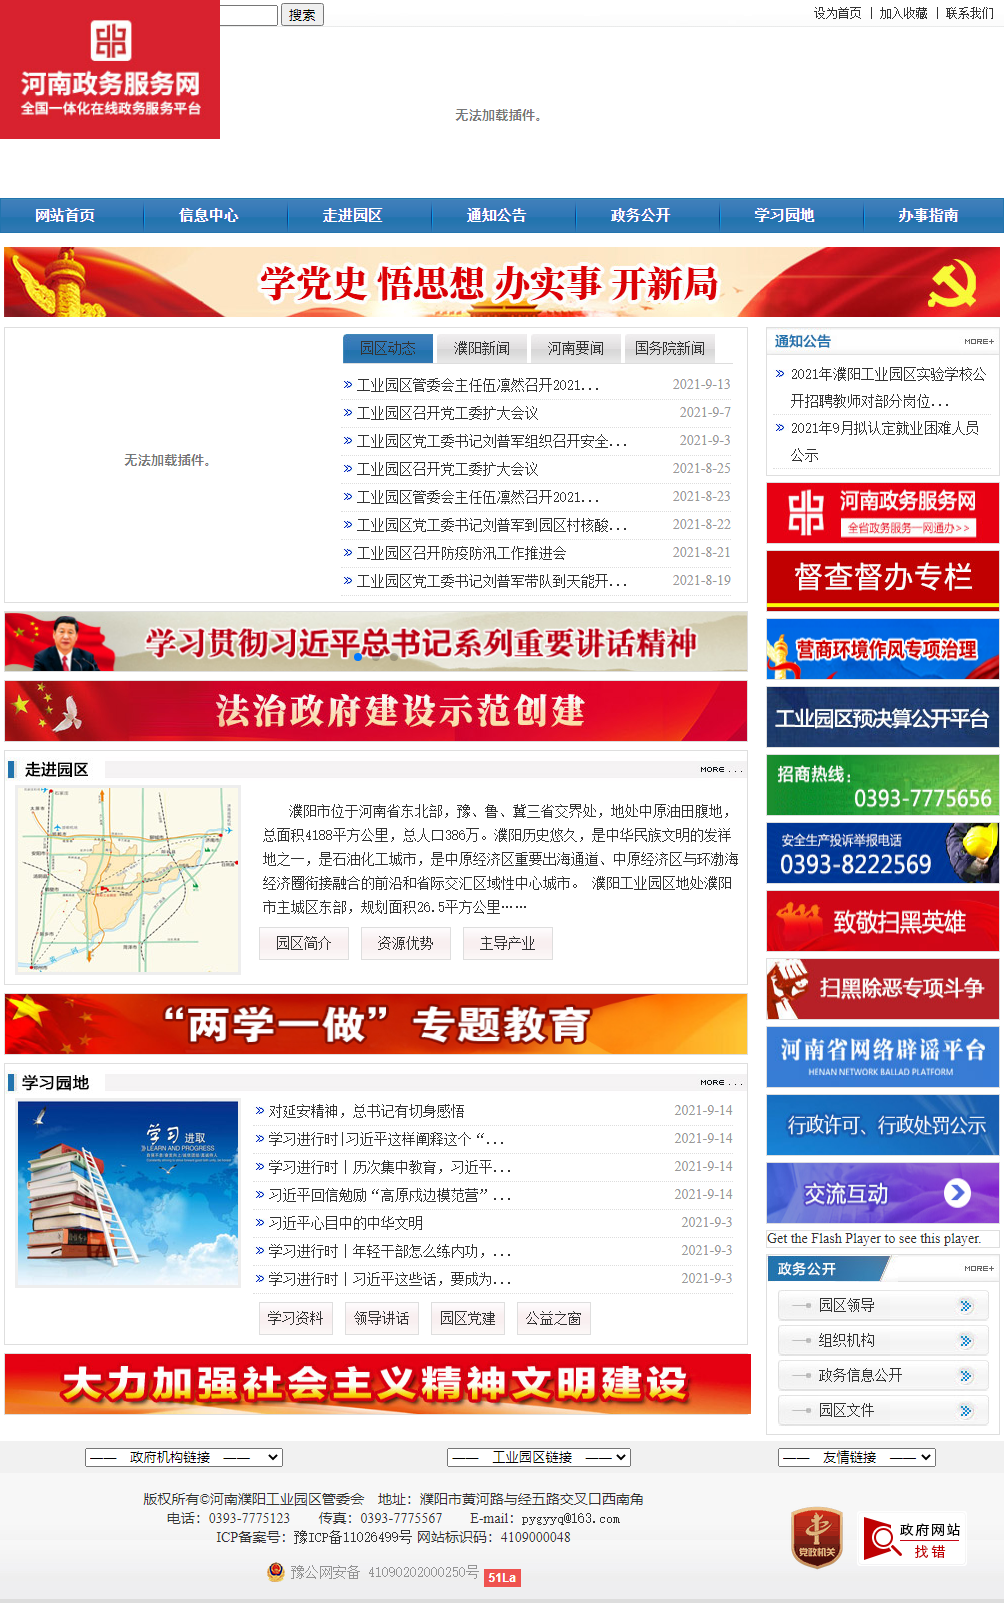 河南濮阳工业园区管理委员会网站案例